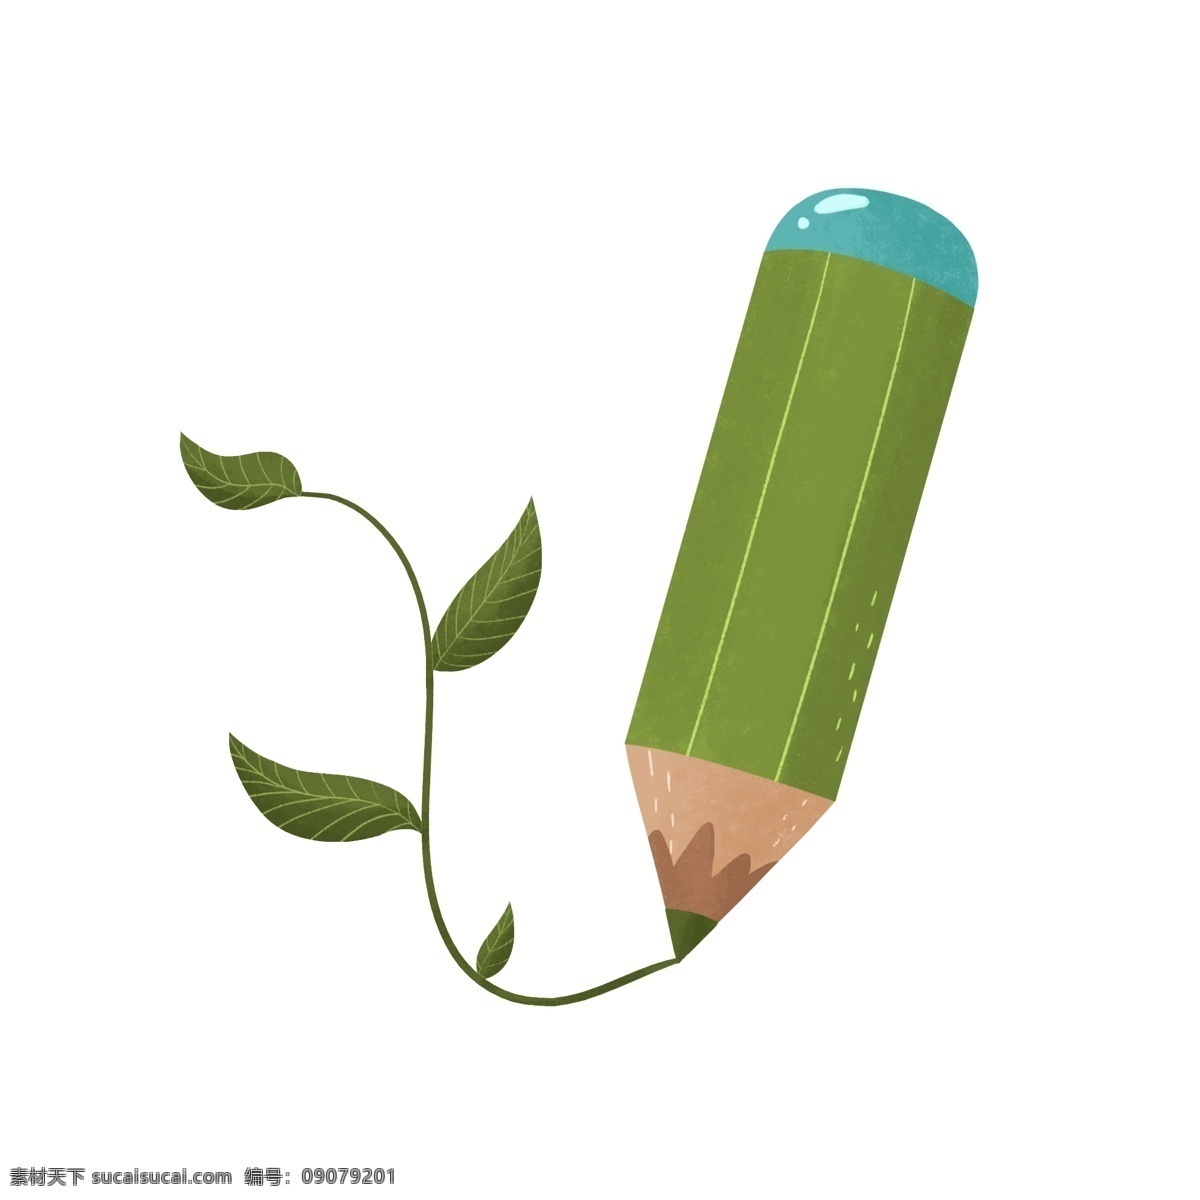 手绘 环保 铅笔 插画 手绘绿色铅笔 绿色植物枝条 创意环保插画 绿色环保插画 植物 绿叶环保插画